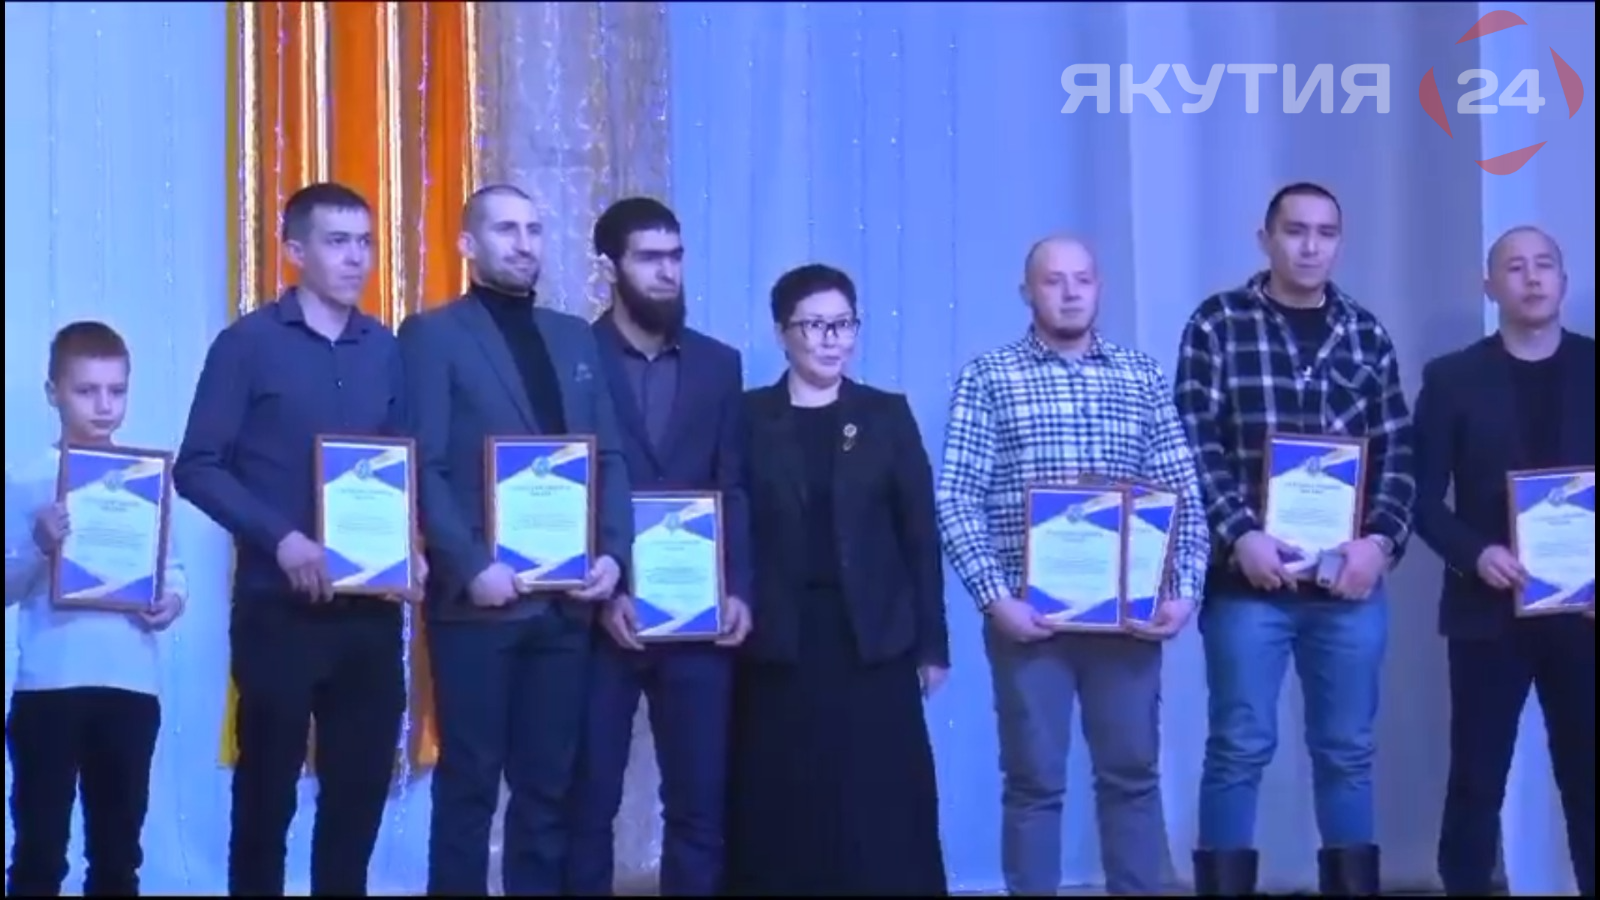 Бал «Премия года» провели в Оймяконском районе Якутии